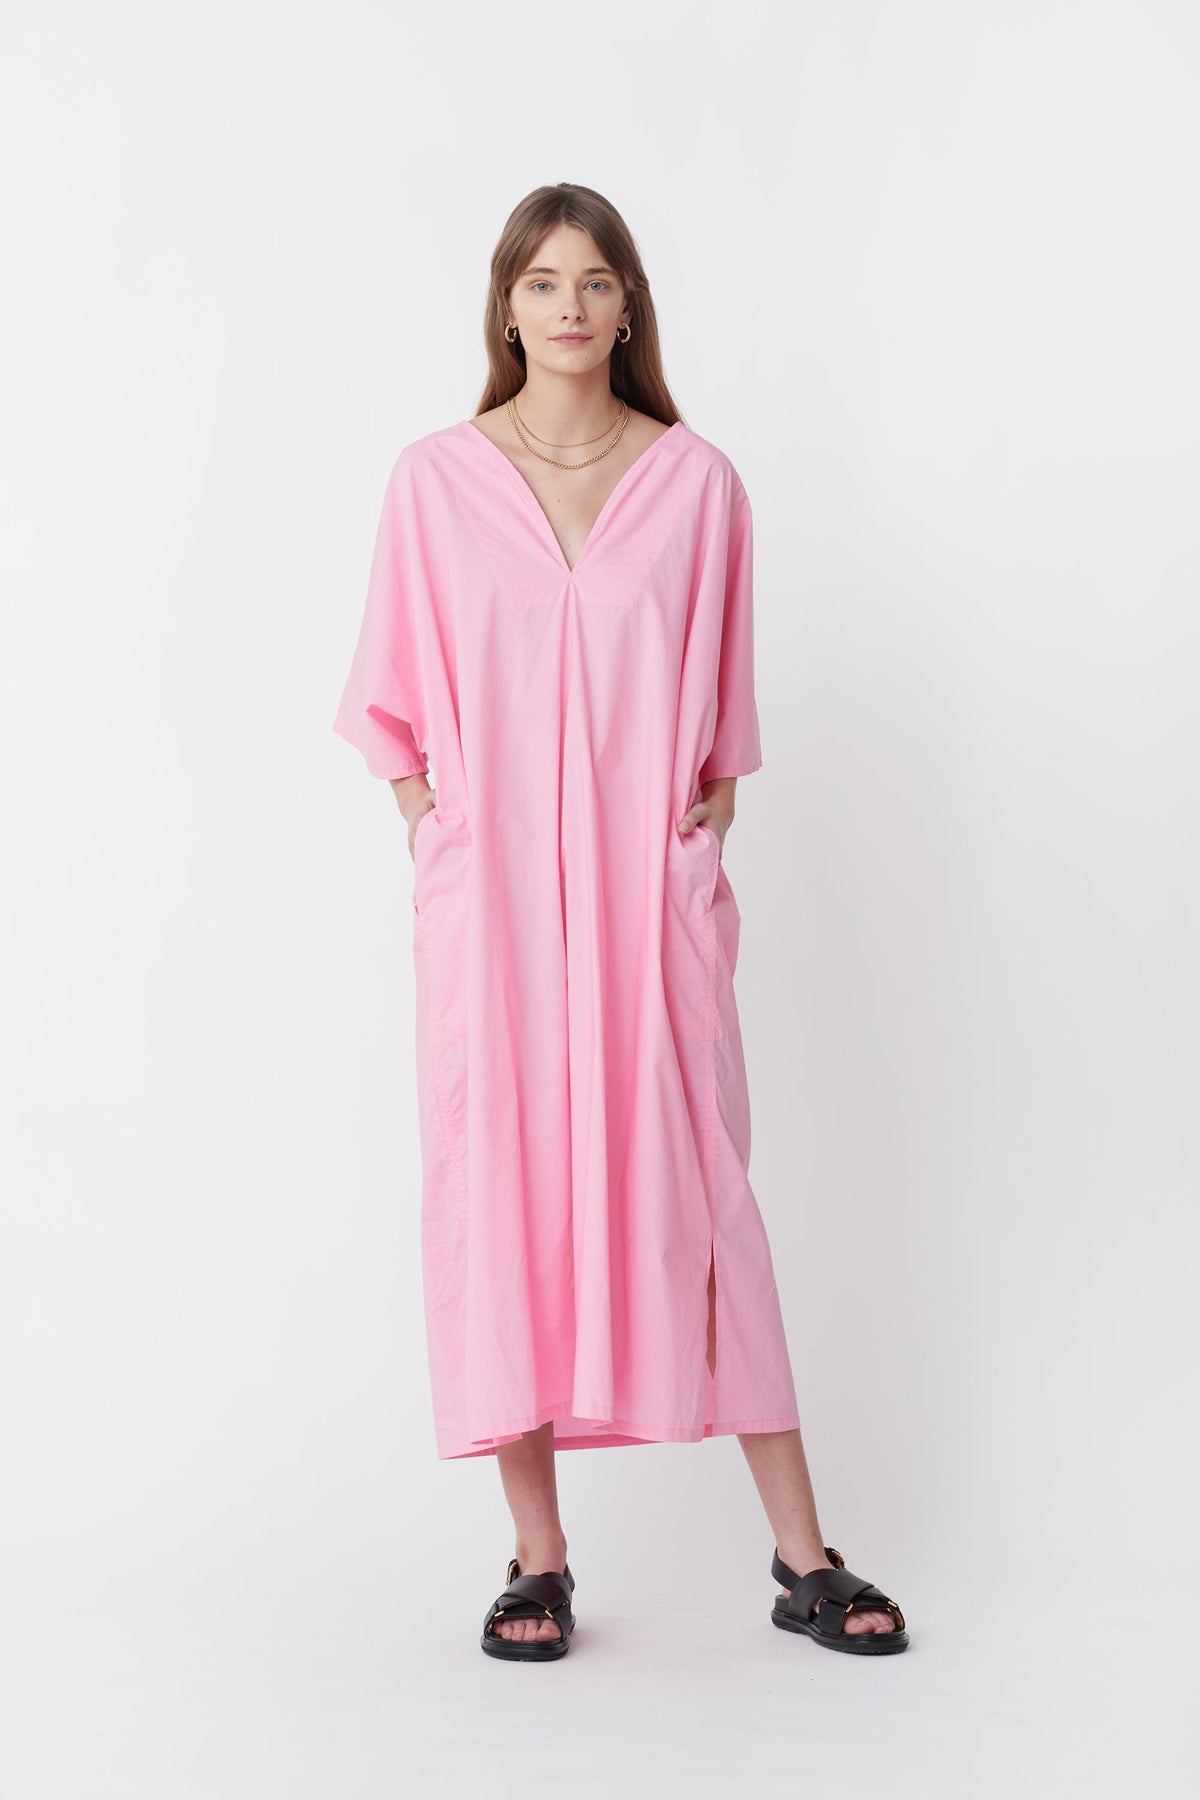 Blanca Sierra Dress // Pink